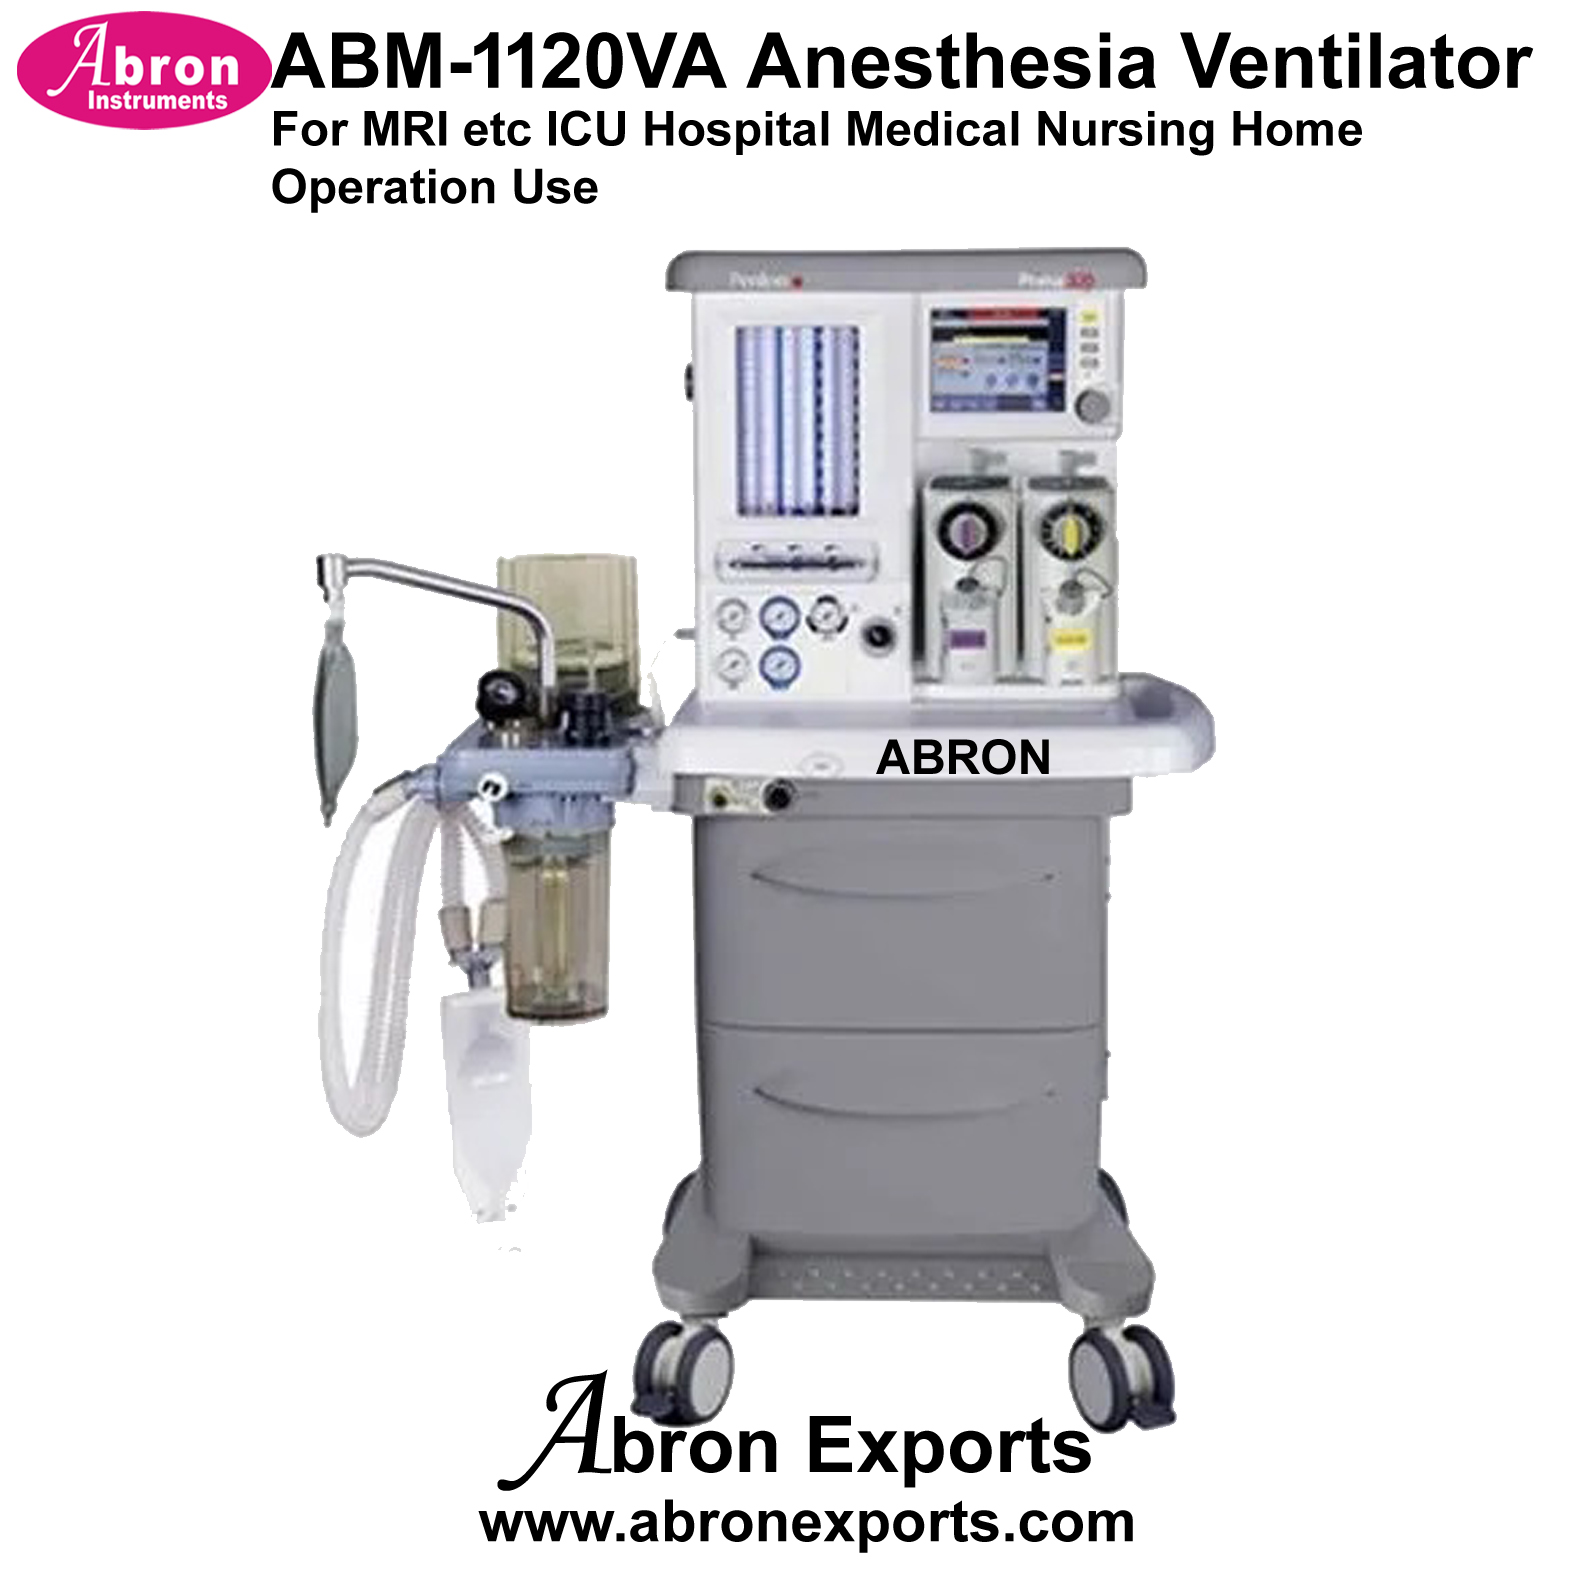 Anesthesia Ventilator For MRI etc ICU Hospital Medical Nursing Home Operation Use Abron ABM-1120VA 